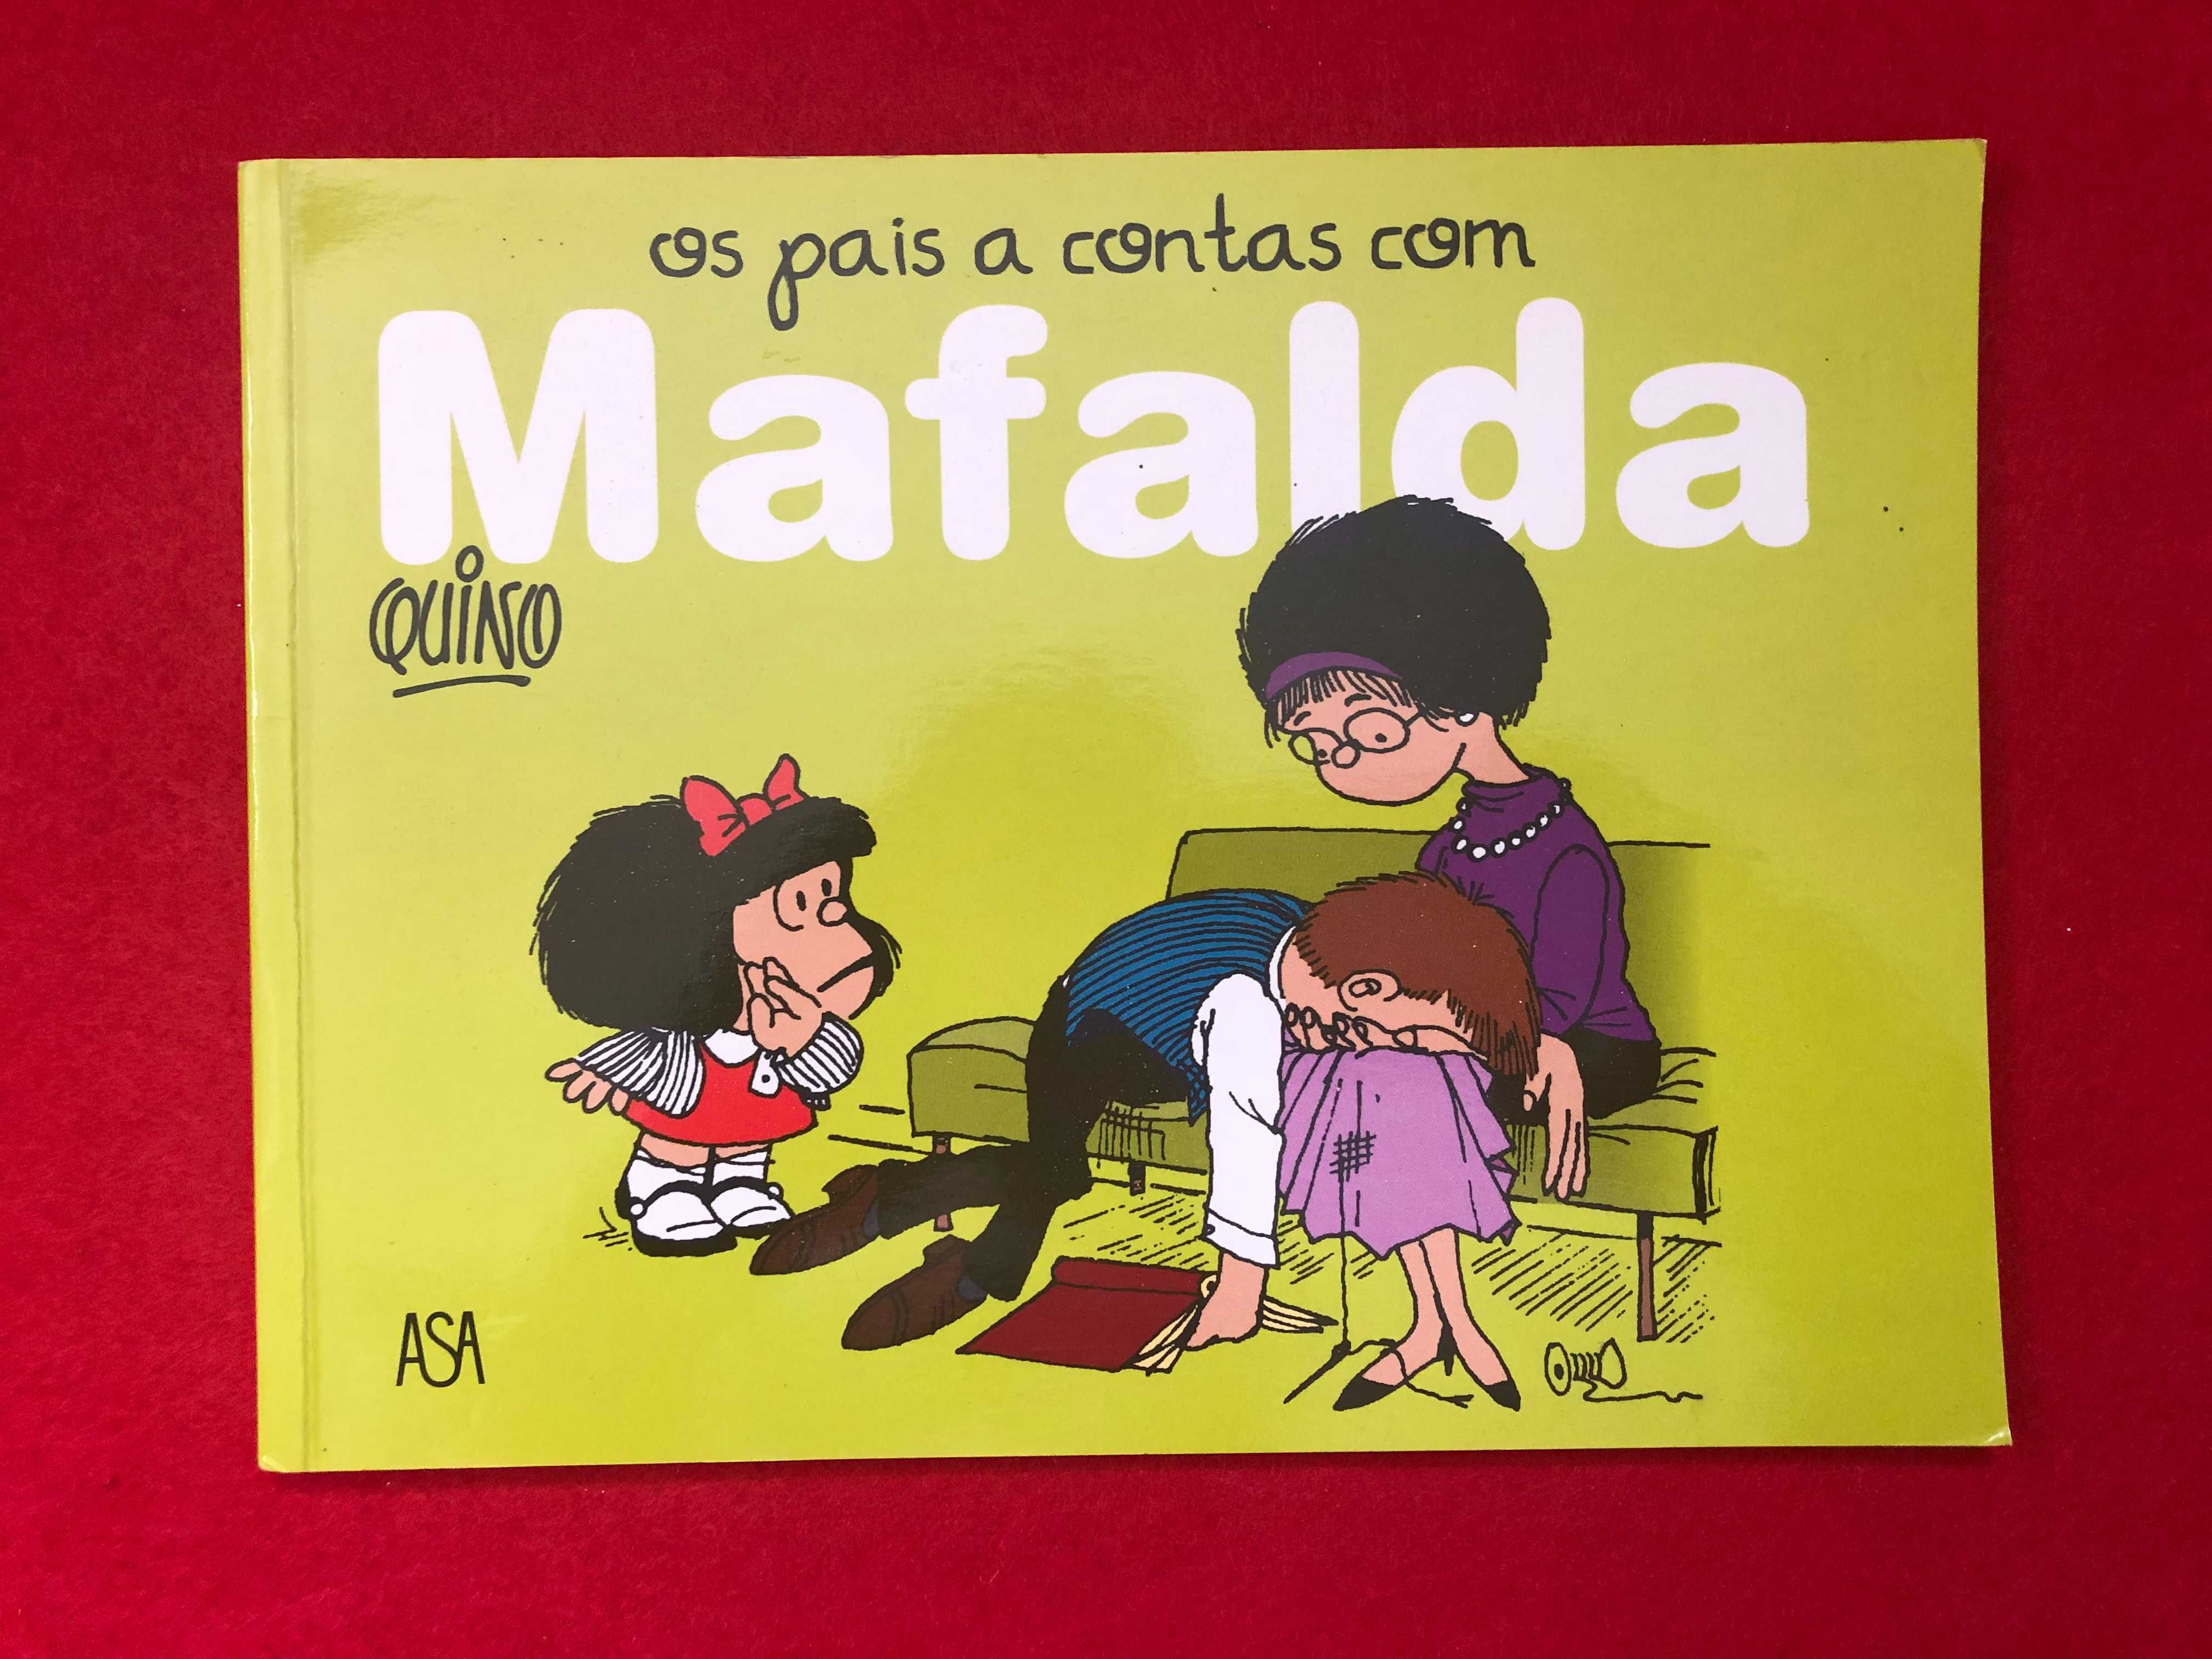 Os pais a contas com Mafalda - Quino